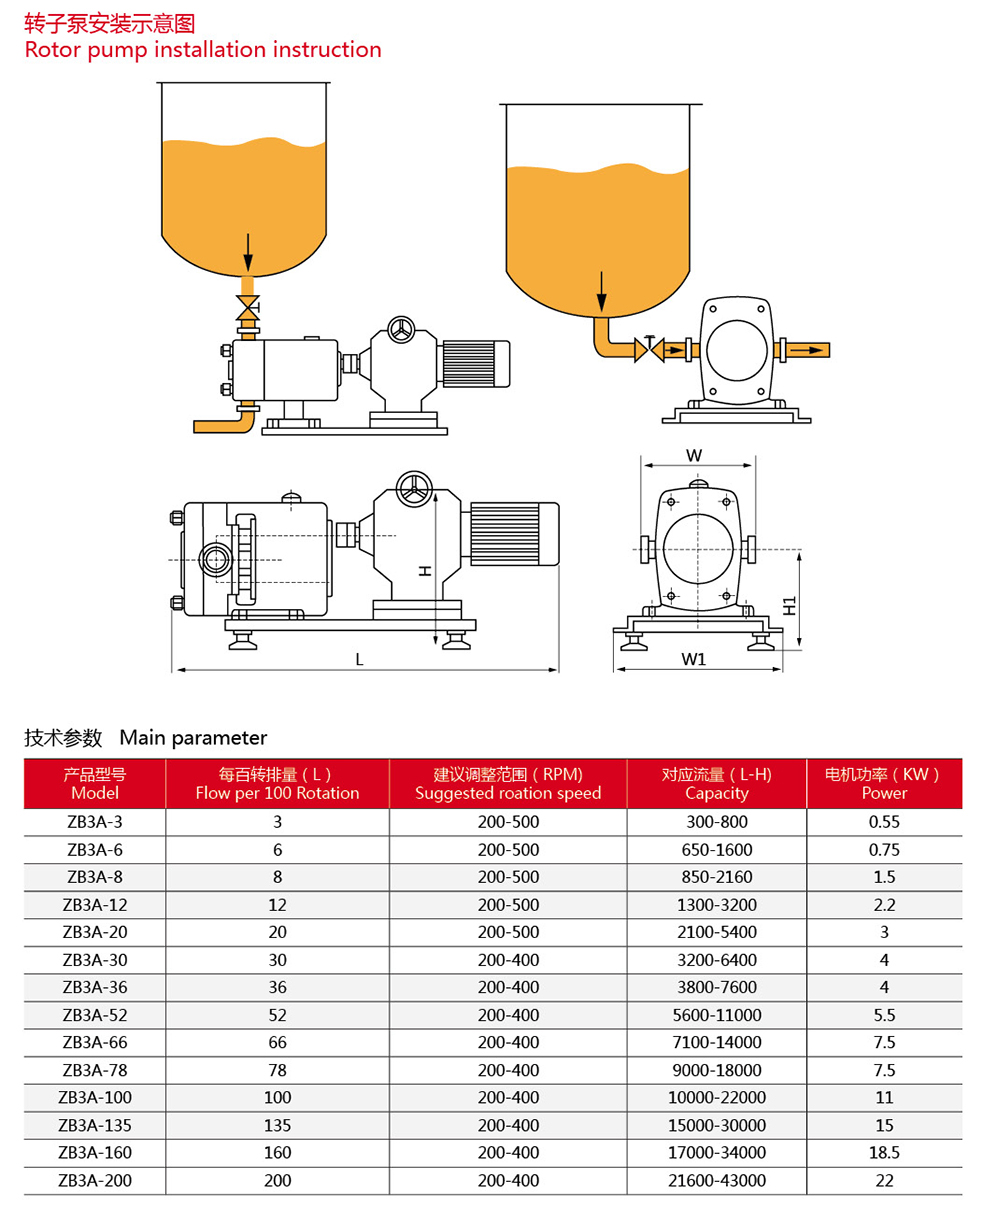 Main Parameter for Sanitary Lobe Pump